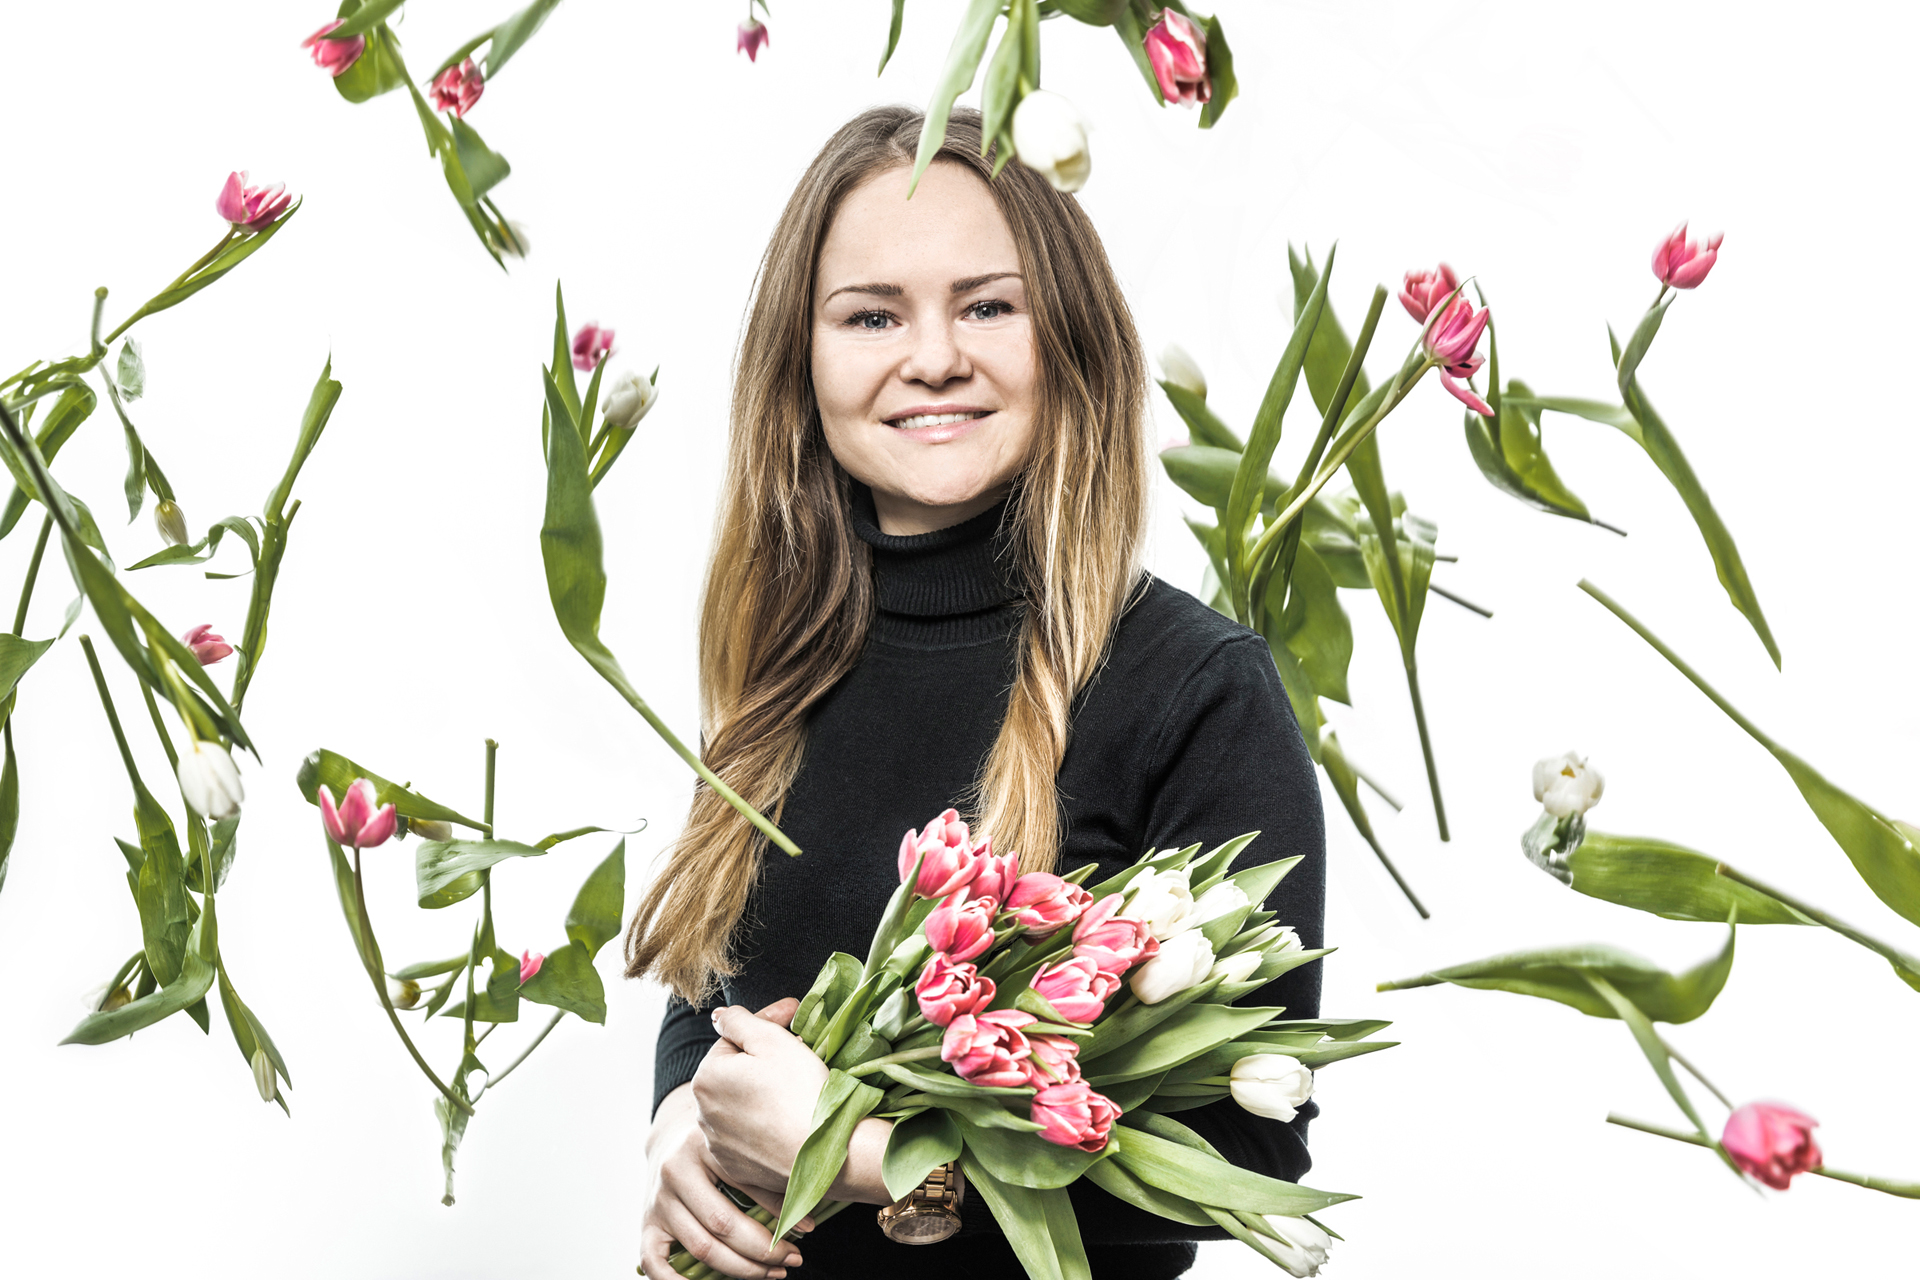 Werbefotograf Jochen Rolfes aus Düsseldorf mit Werbefotografie: Facebook-Kampagne für L'Occitane En Provence im Studio, Frau liebt Blumen